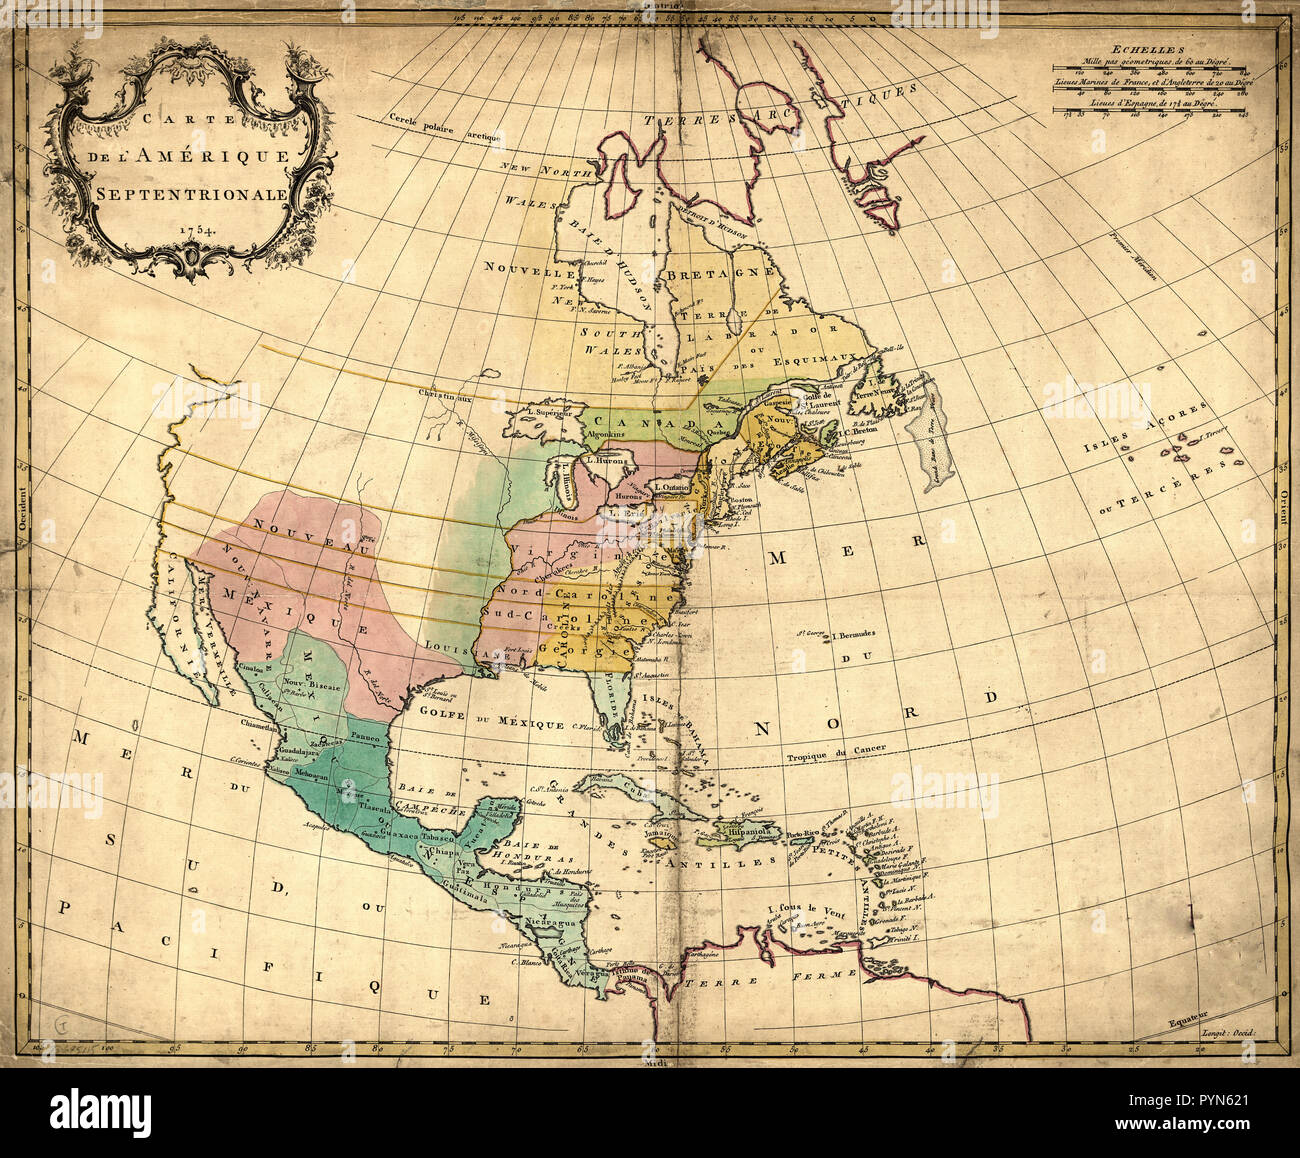 Vintage Maps / Antique Maps - Carte de l'Amérique septentrionale, 1754 Jean Palairet Stock Photo